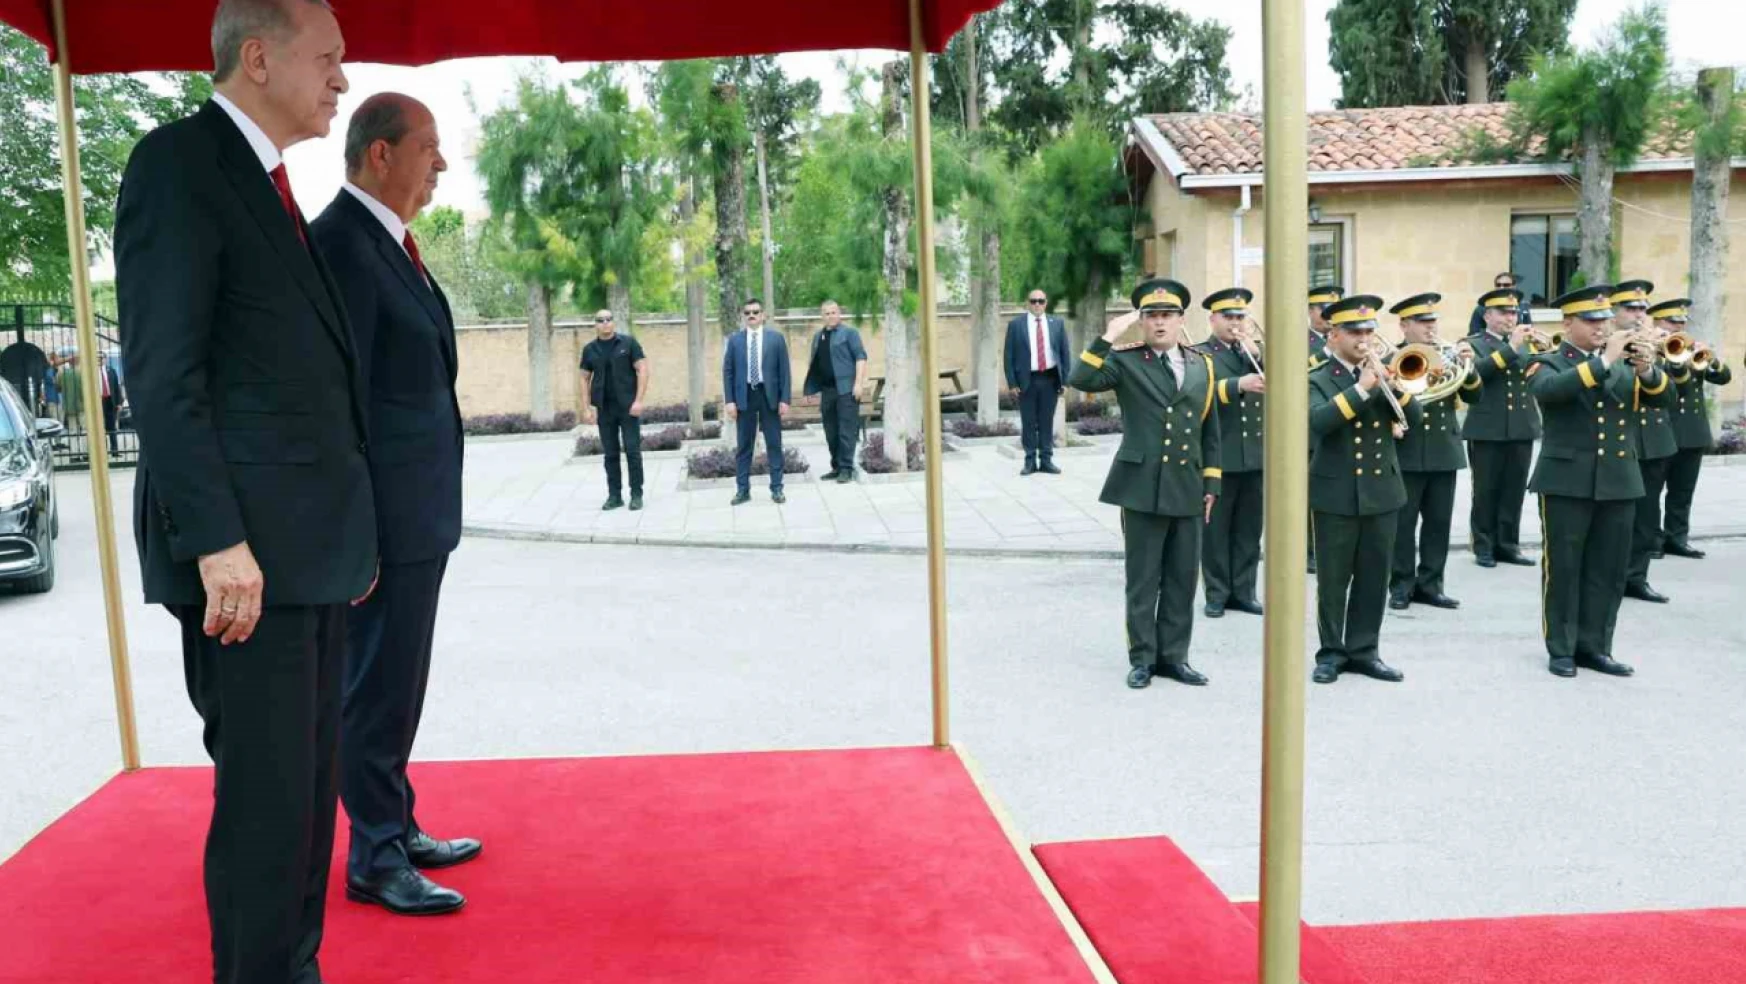 Cumhurbaşkanı Erdoğan, KKTC'de resmi törenle karşılandı